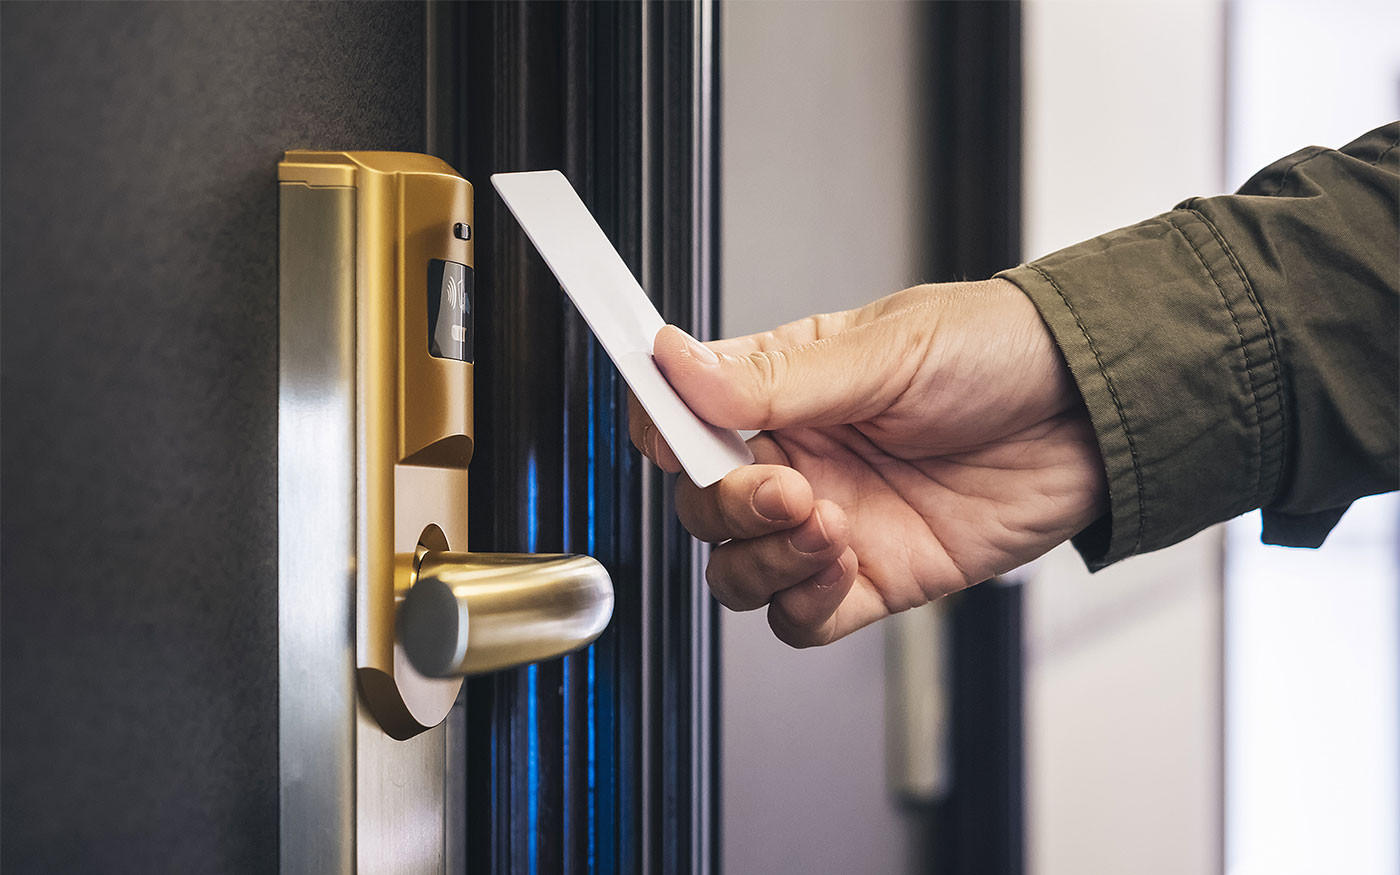 How to choose a hotel door lock